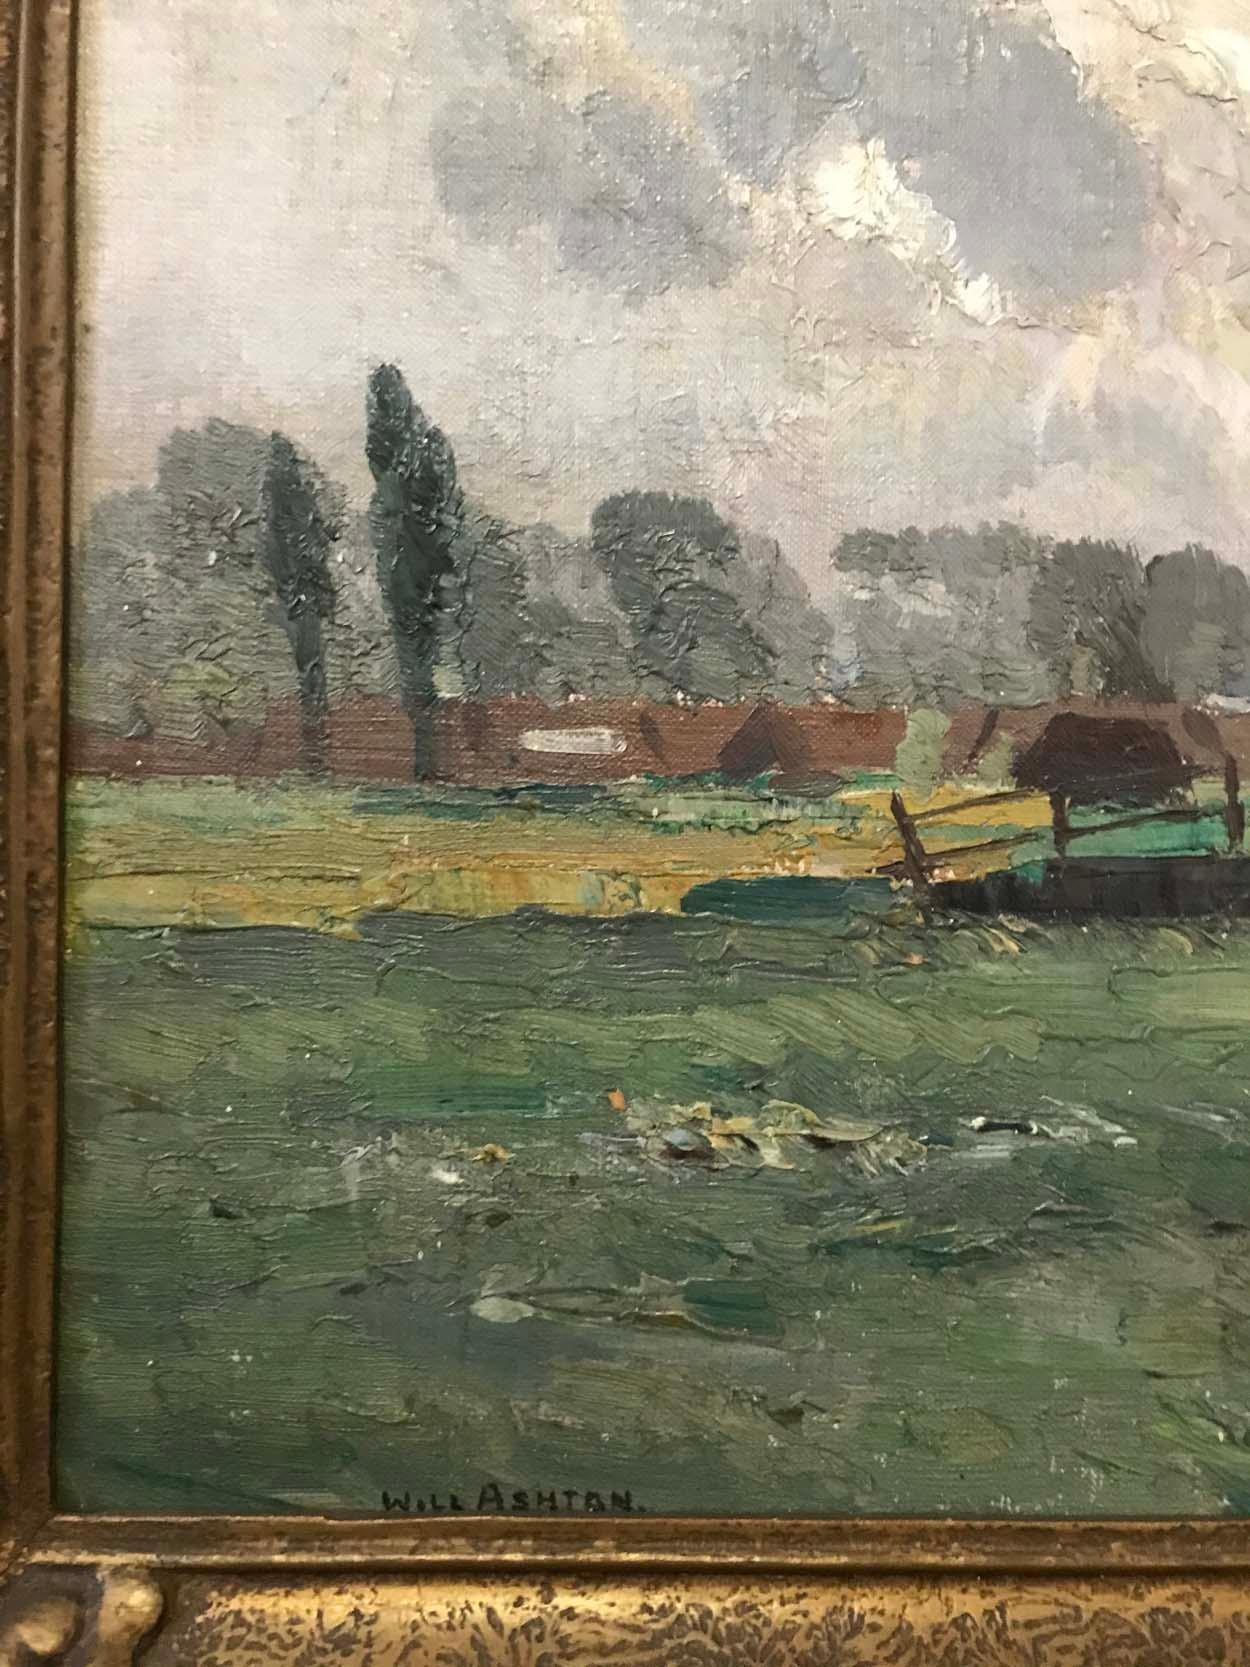 William Ashton (1881-1963), Huile sur toile sur carton, signé en bas à gauche : WILL ASHTON

Cette œuvre a probablement été peinte lors de l'un des voyages de peinture d'Ashton au Royaume-Uni, au début du XXe siècle. L'image d'un moulin à vent de